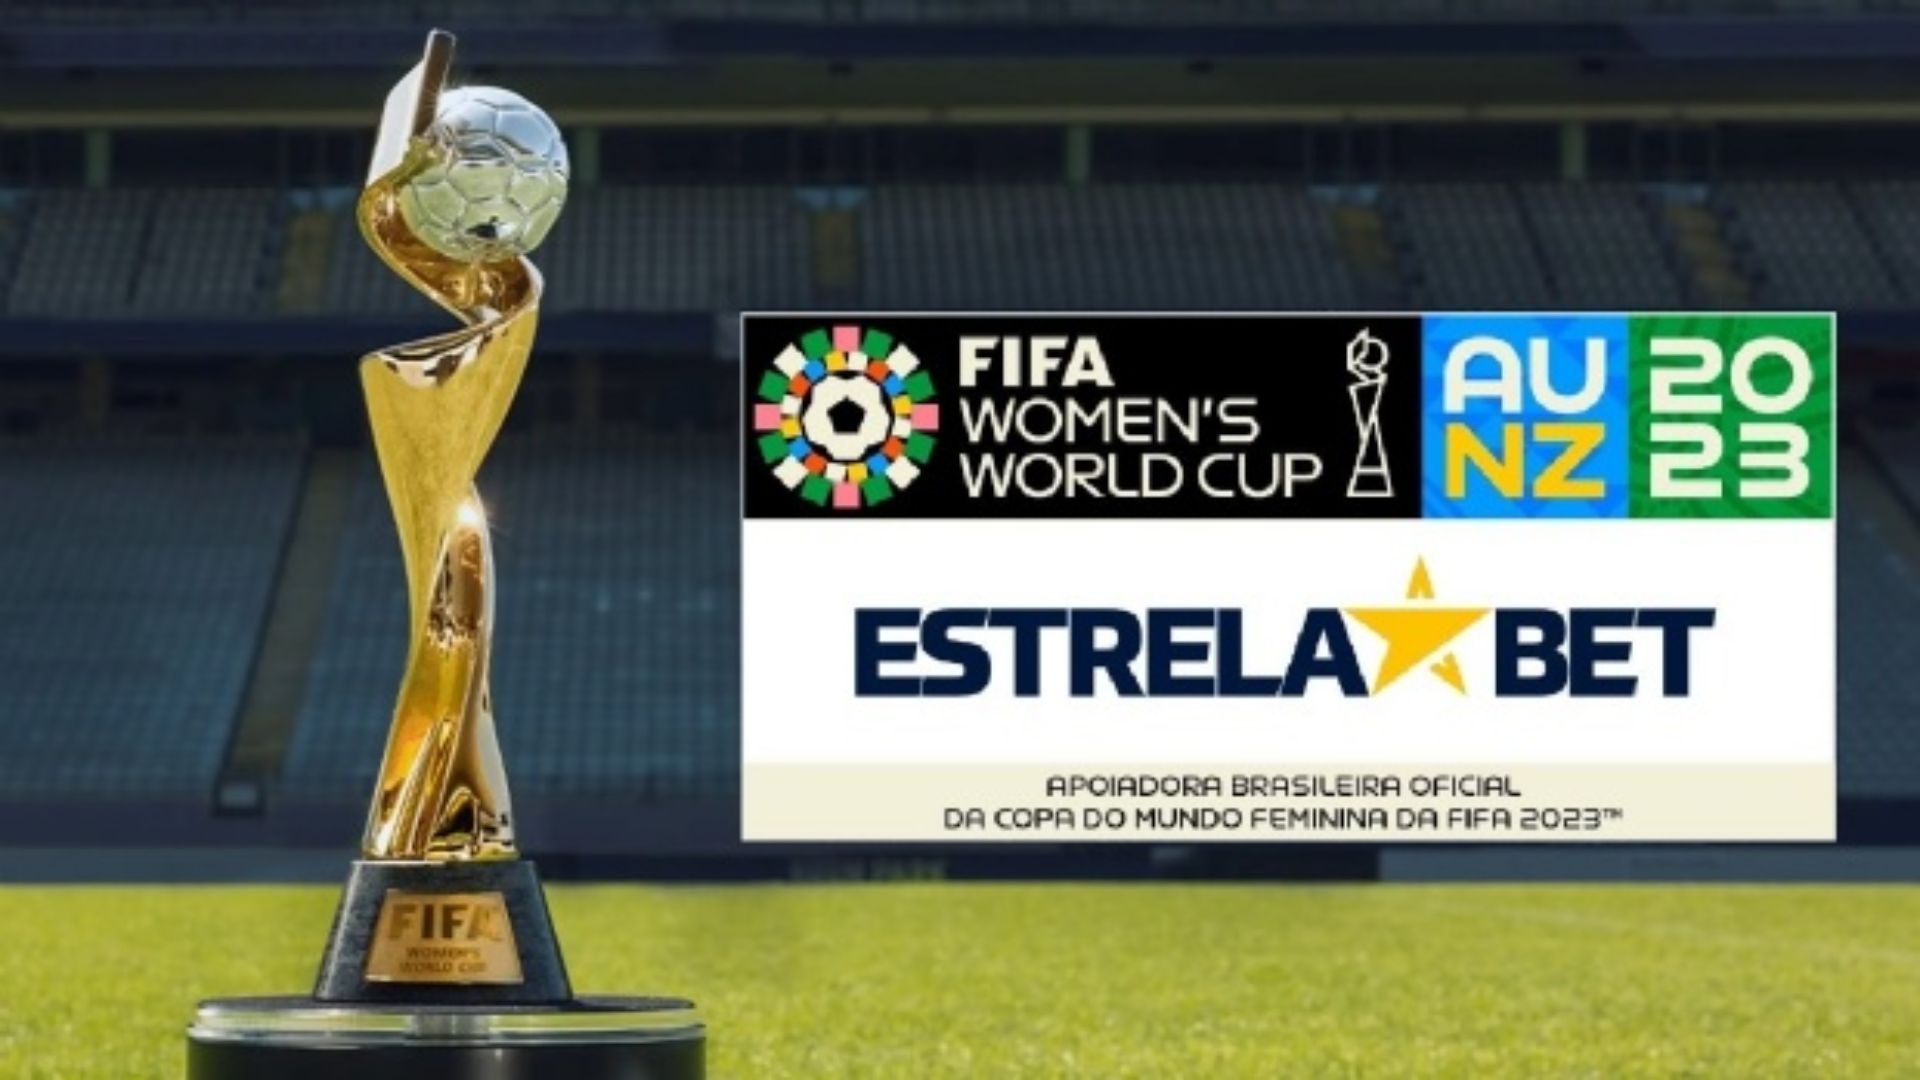 EstrelaBet e a Copa do Mundo Feminina firmaram uma parceria para o Mundial